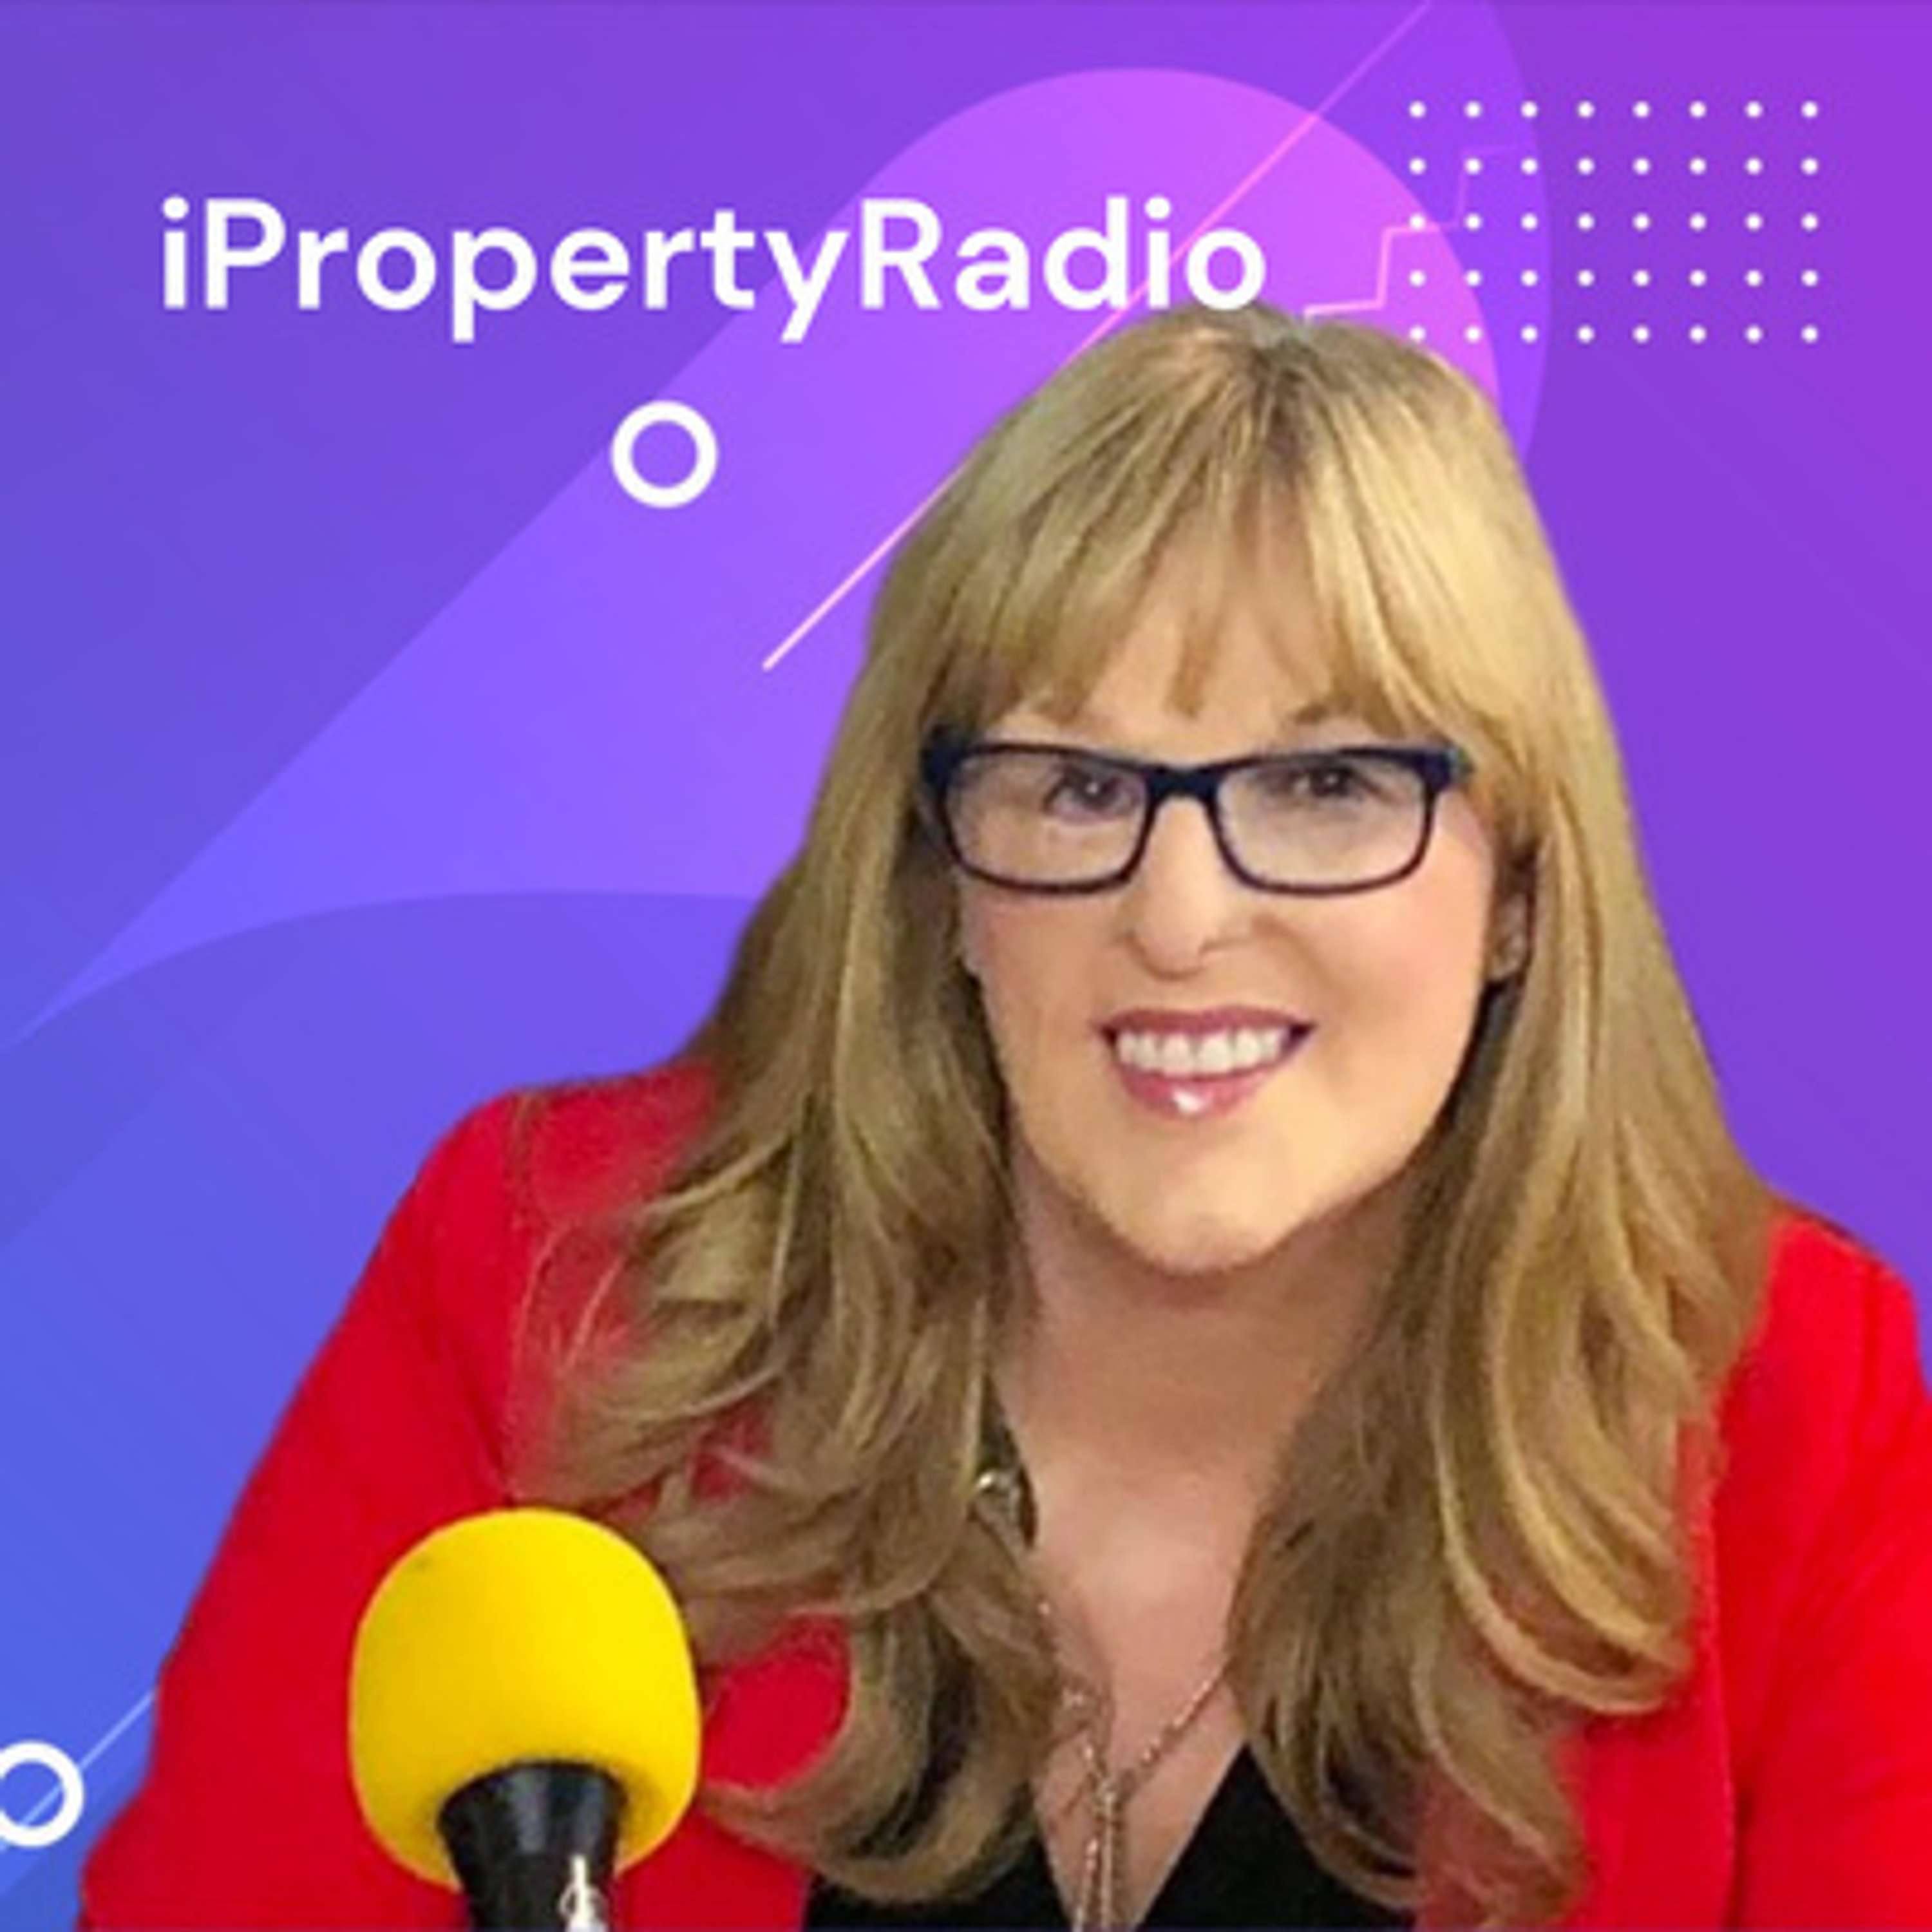 Ep.41 iPropertyRadio: Property Matters, November 12th 2019